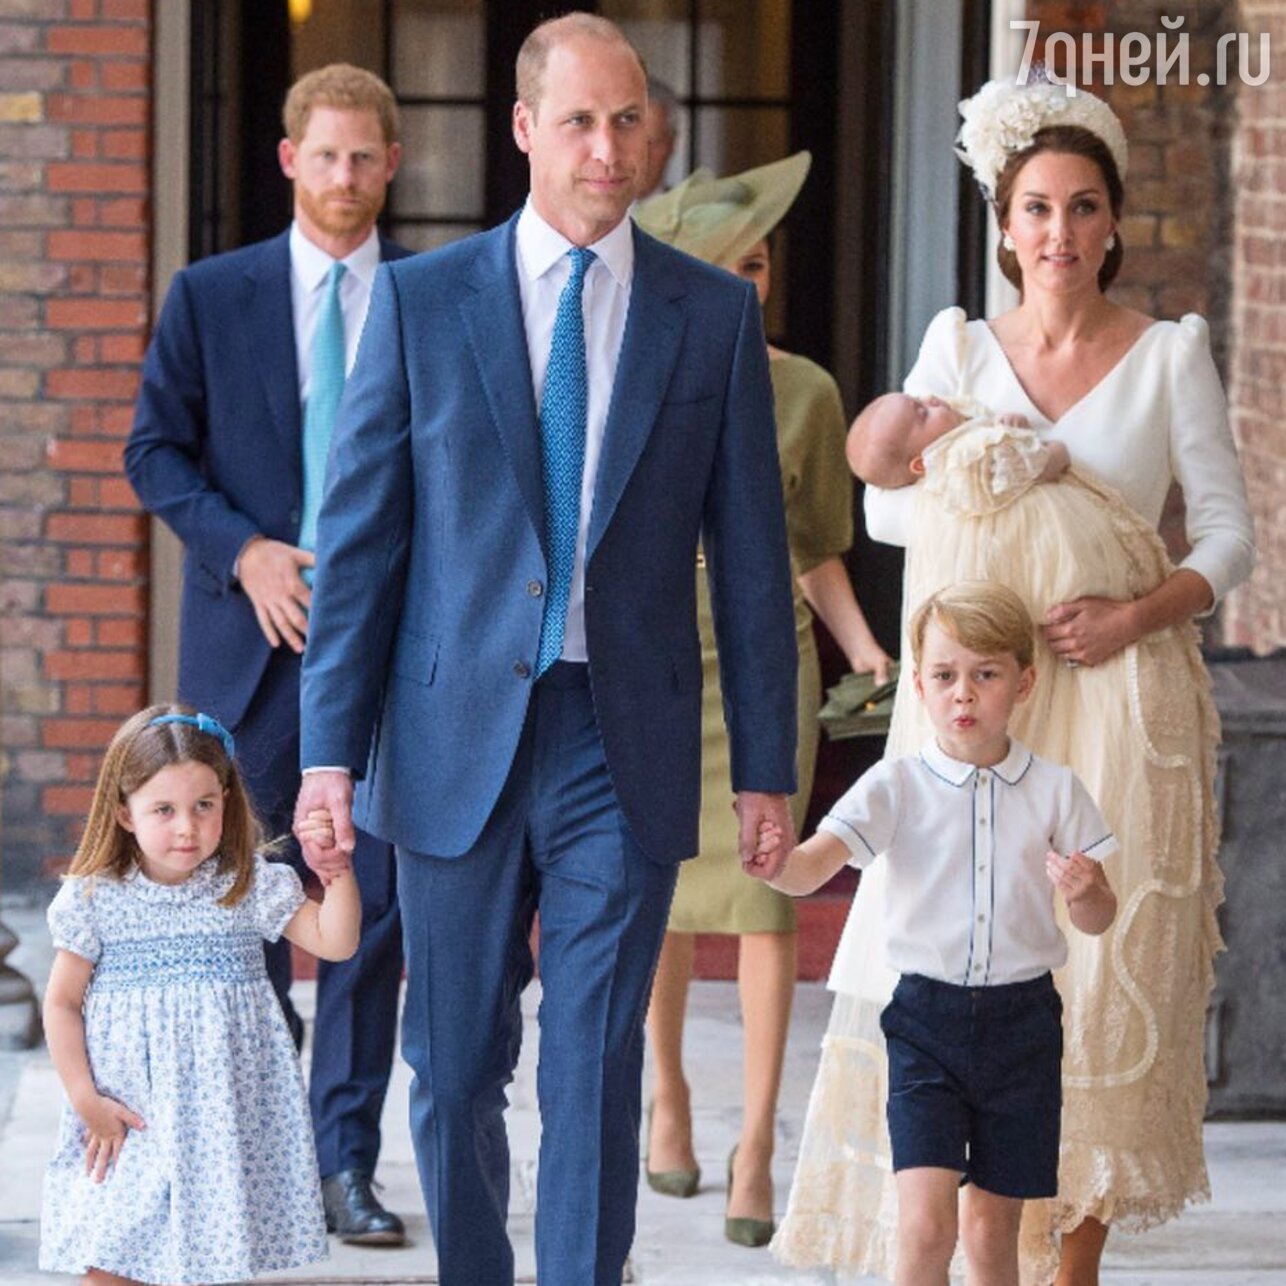 Принц Уильям с супругой Кэтрин и детьми: Шарлоттой, Джорджем и Луи